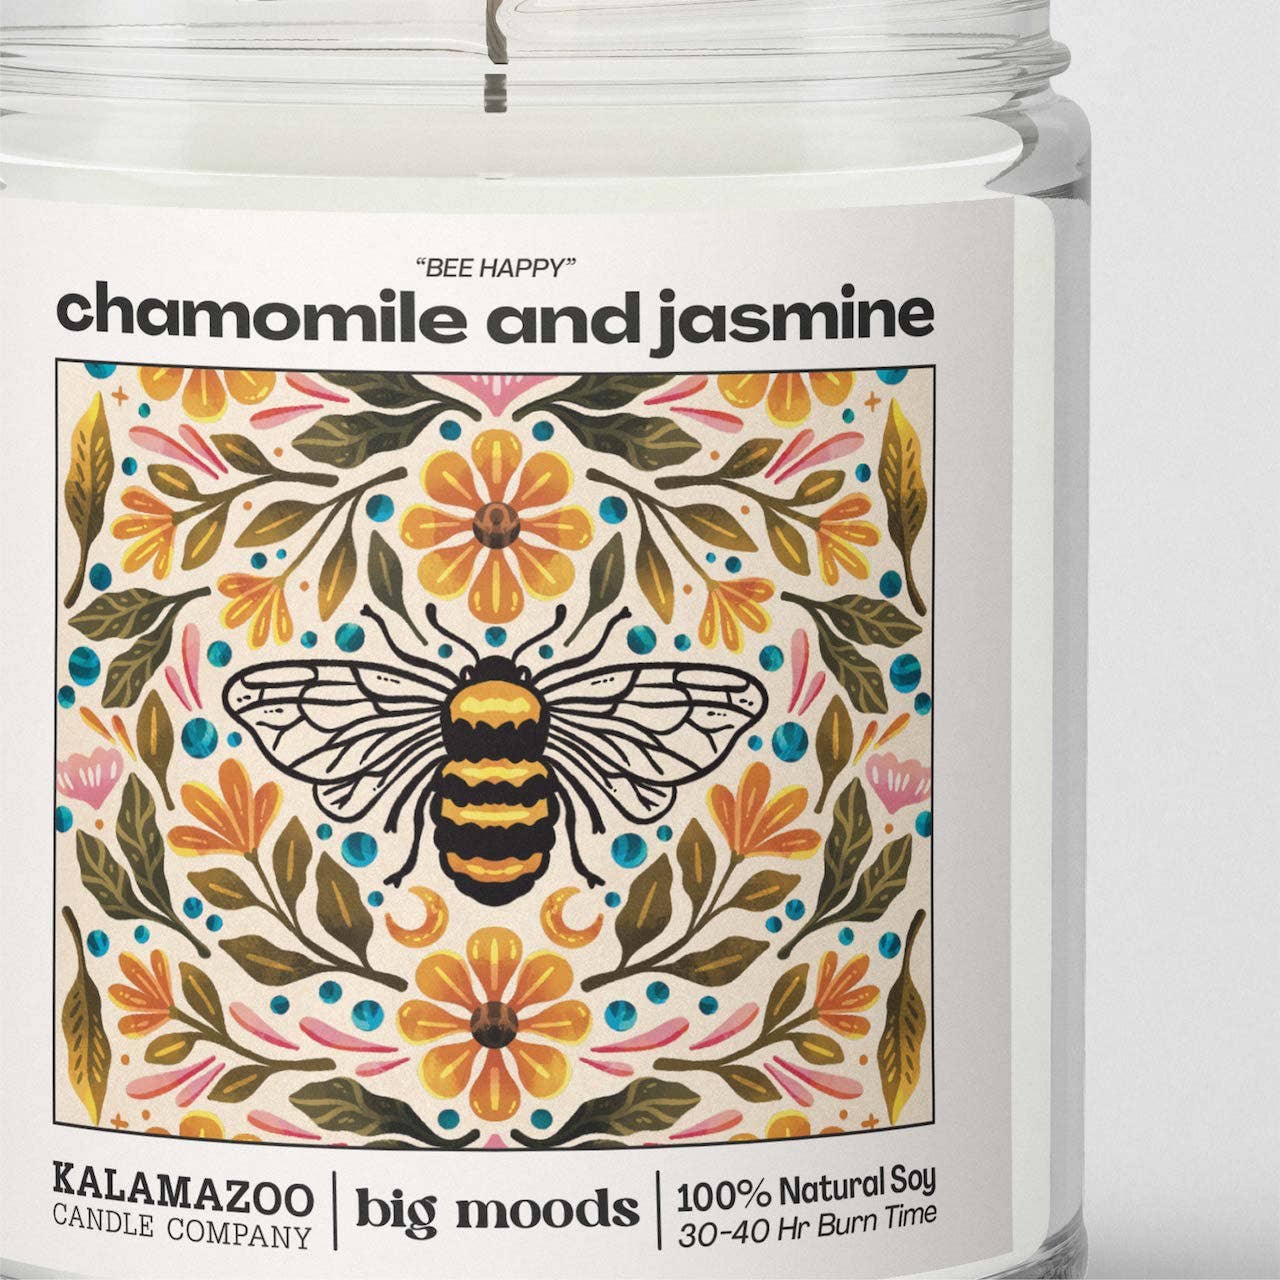 Big Moods - "Bee Happy" Chamomile and Jasmine -  Luxury Soy Candle